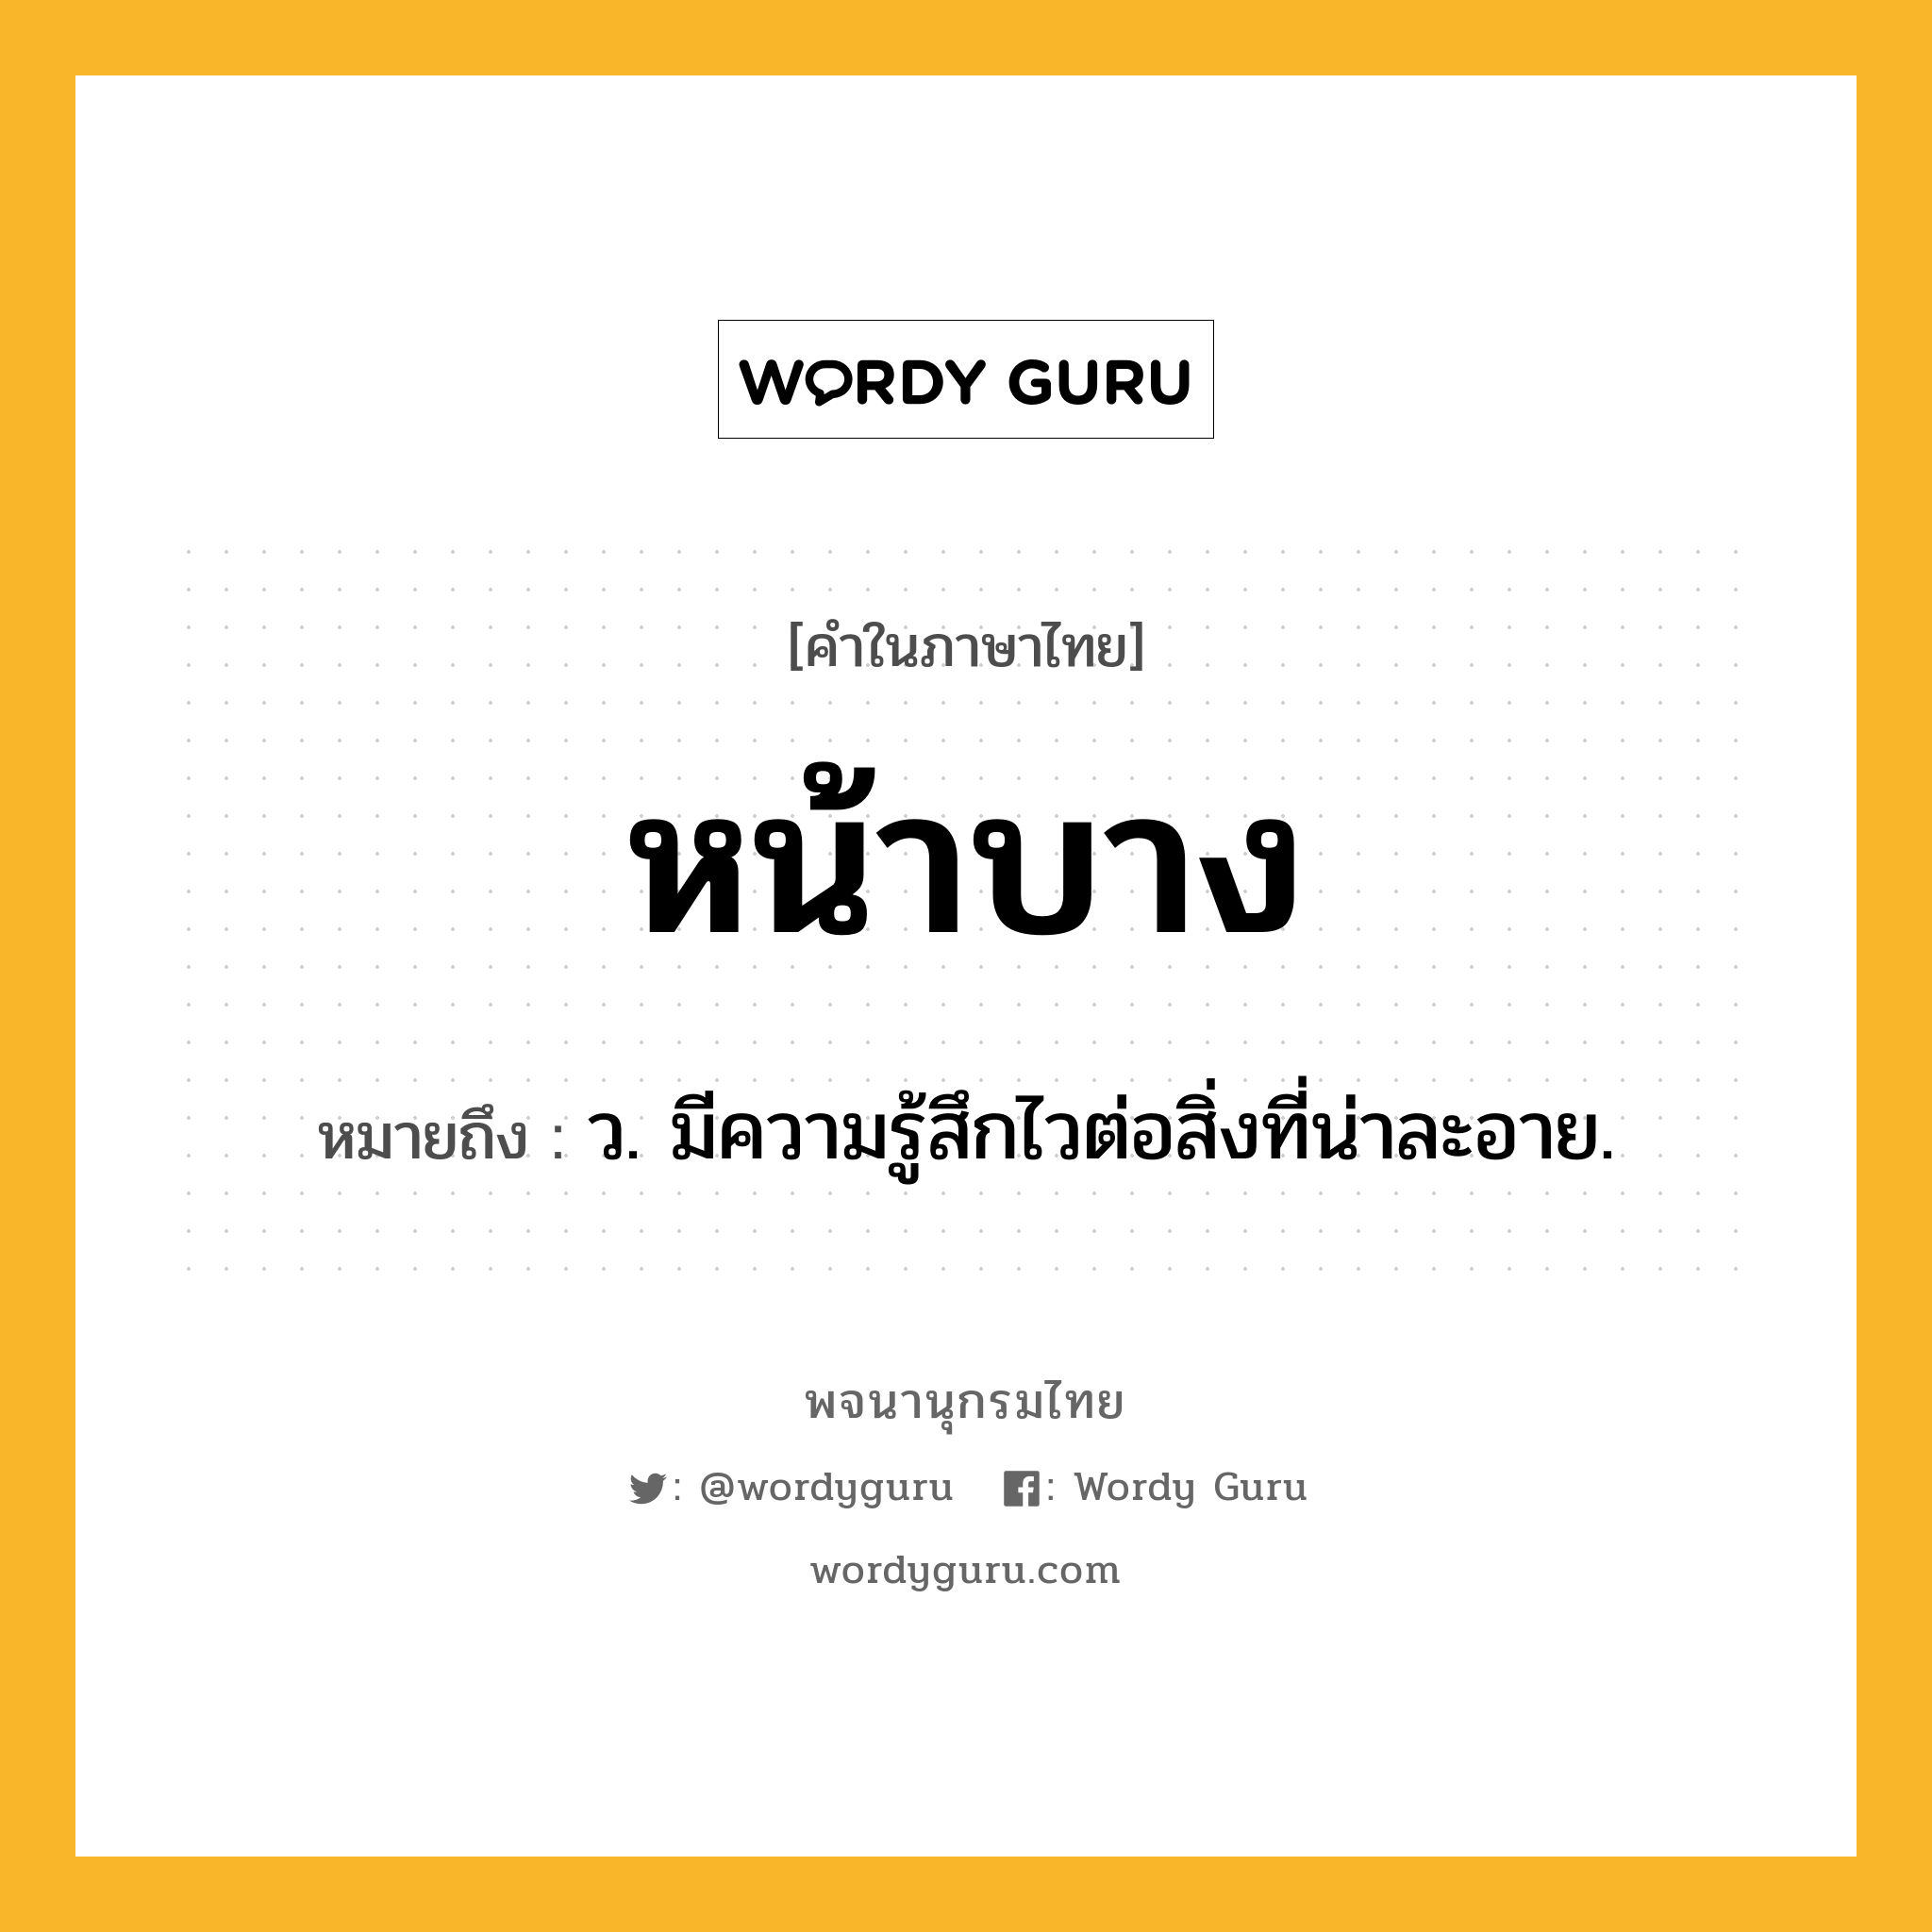 หน้าบาง หมายถึงอะไร?, คำในภาษาไทย หน้าบาง หมายถึง ว. มีความรู้สึกไวต่อสิ่งที่น่าละอาย.